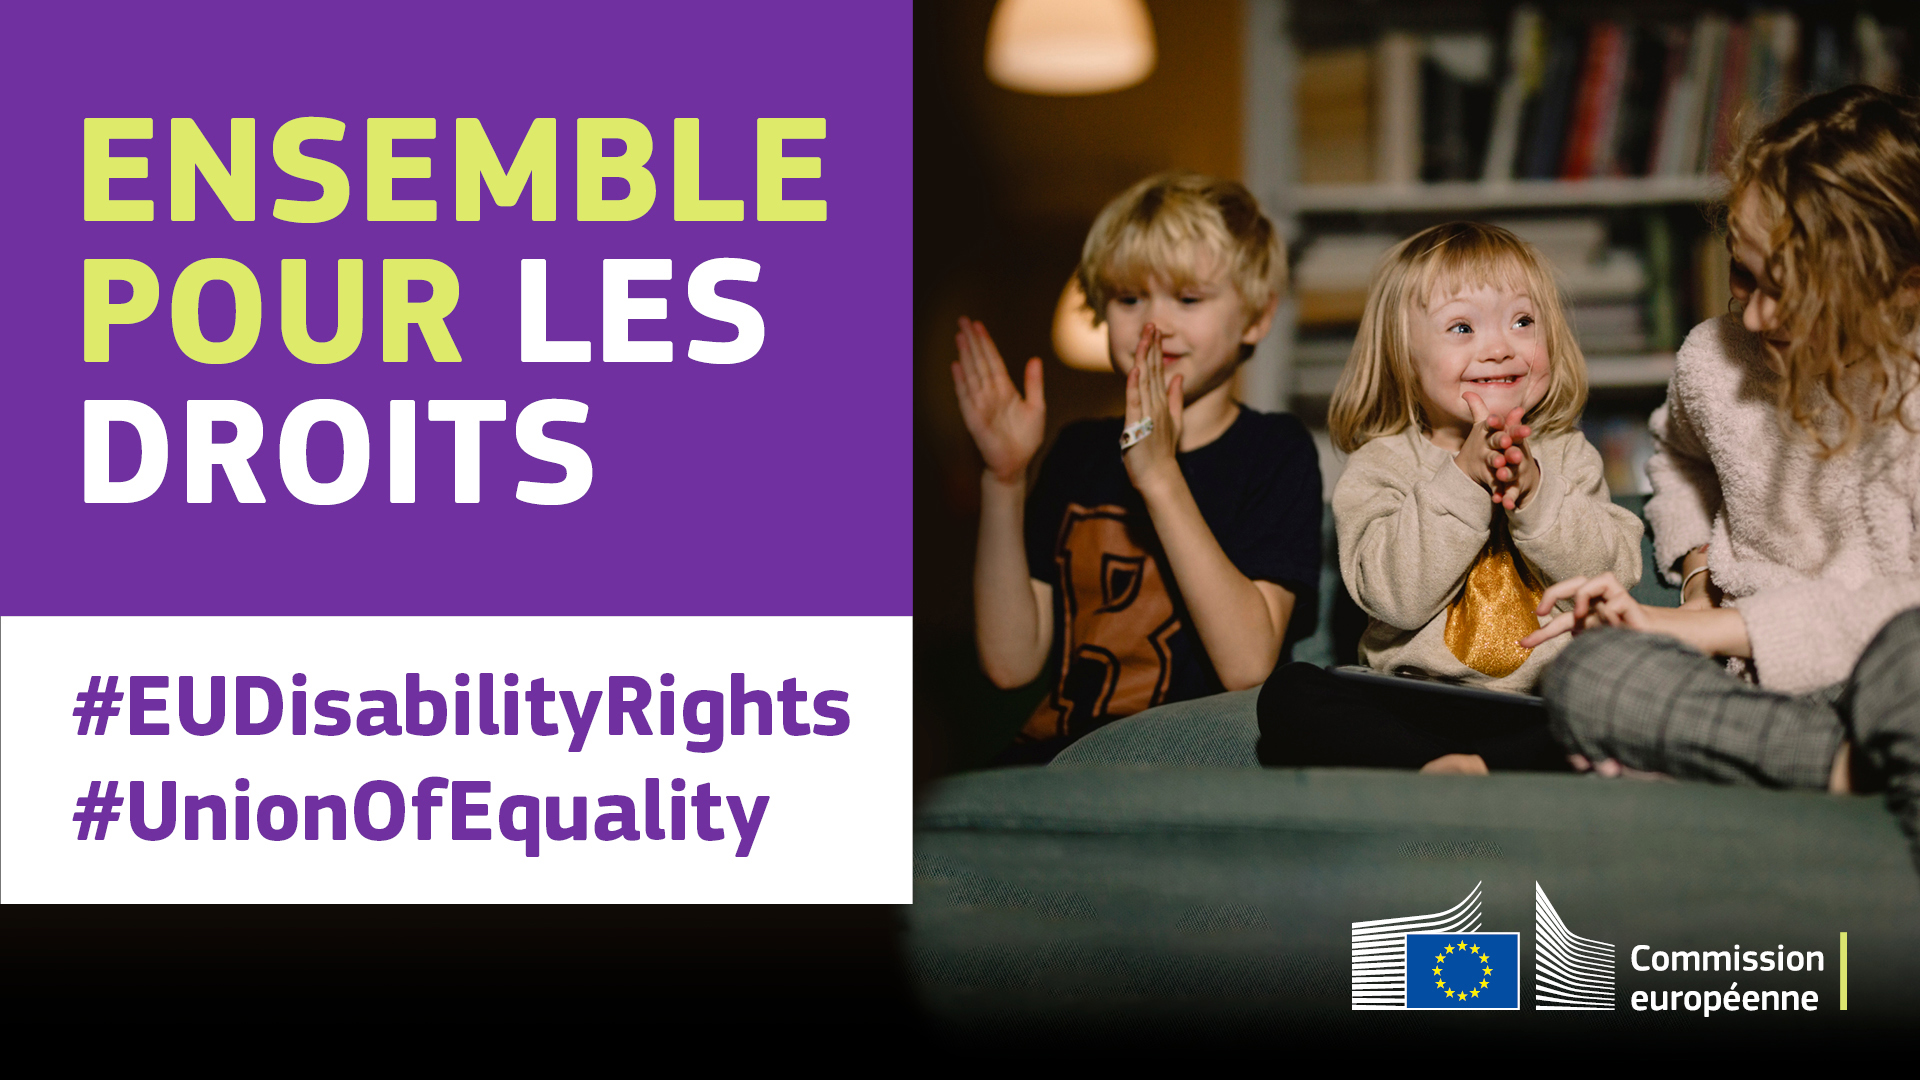 Trois enfants jouent ensemble. L’un est atteint de trisomie 21. Texte disant: ensemble pour les droits, #EUDisabilityRights, #UnionOfEquality.